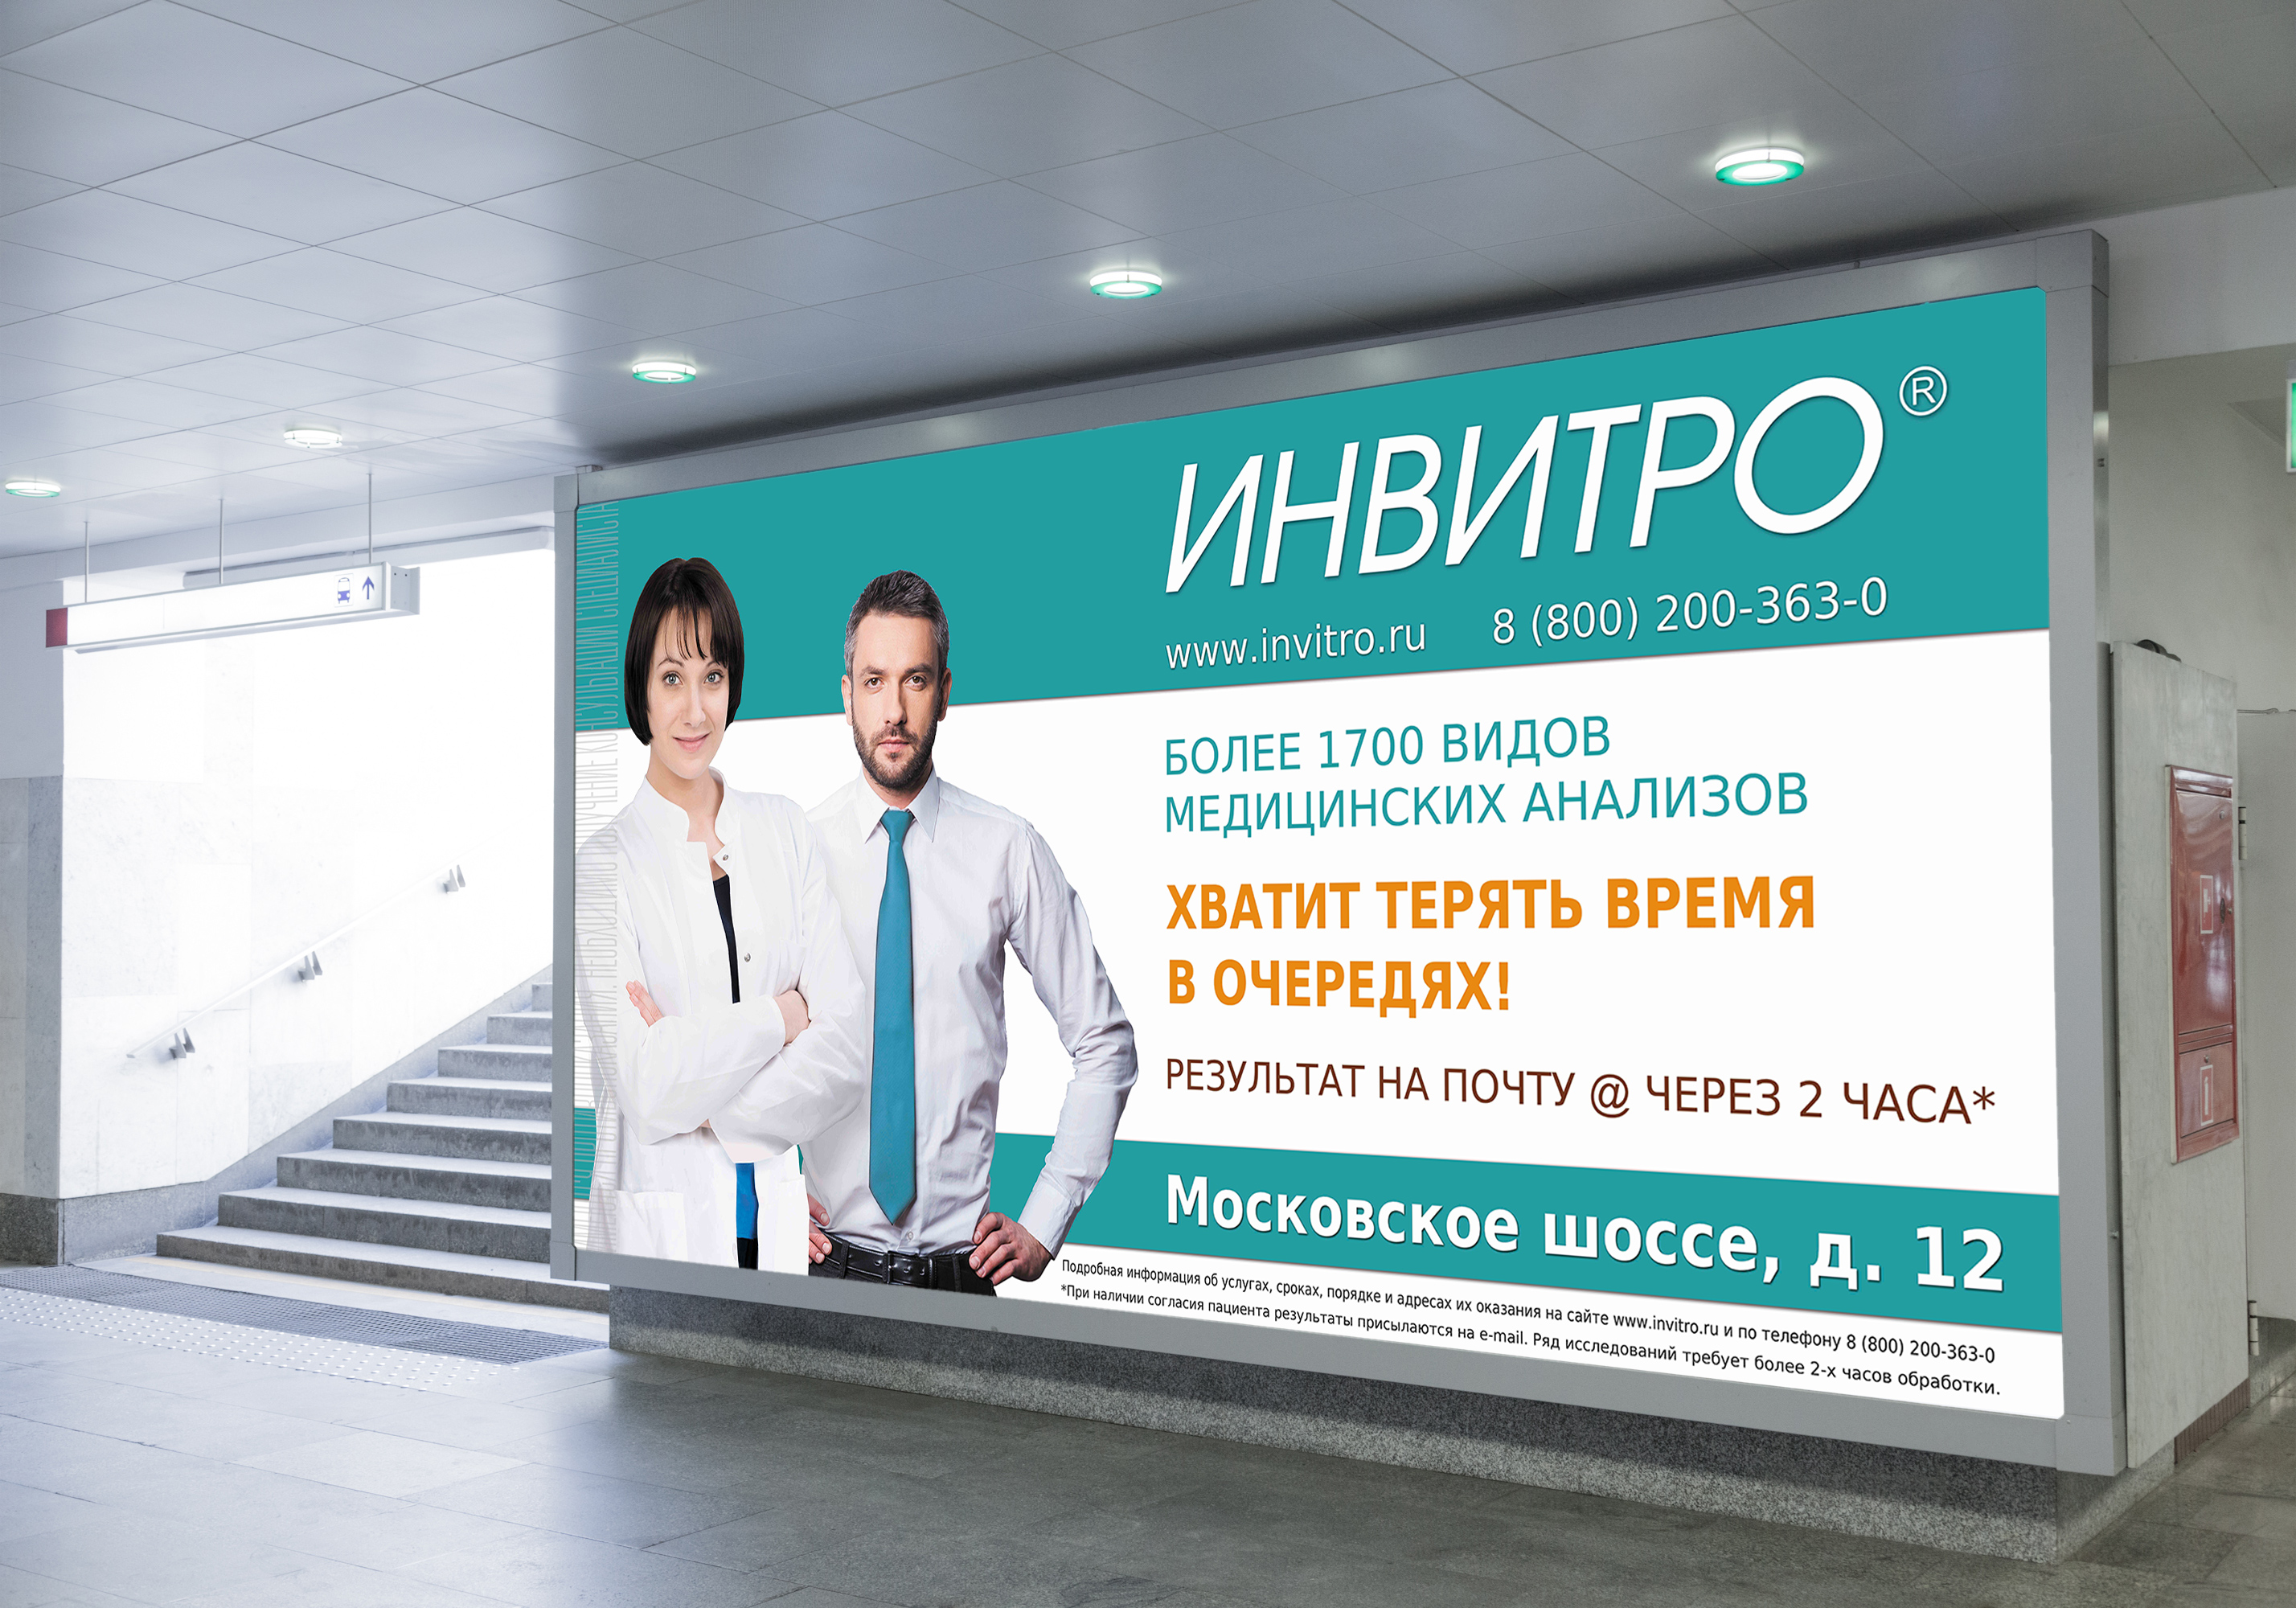 Телефон медицинского центра инвитро. Инвитро реклама. Лаборатория инвитро Москва. Инвитро медицинский центр. Инвитро логотип.